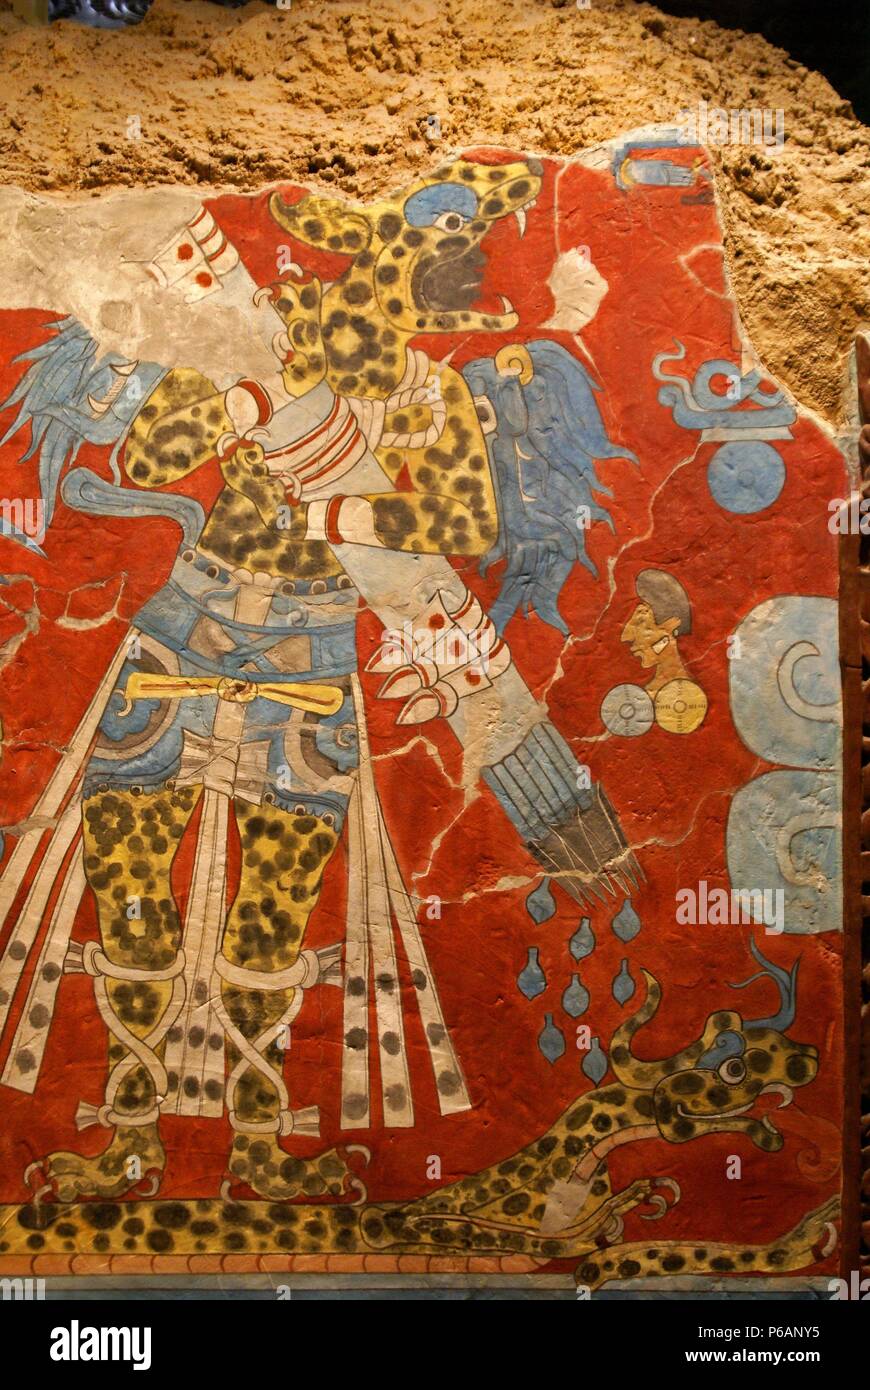 Guerrero ataviado con una piel de jaguar.Pintura mural. Museo Nacional de antropologia. Estado de Mexico D.F. Mexico. Stock Photo